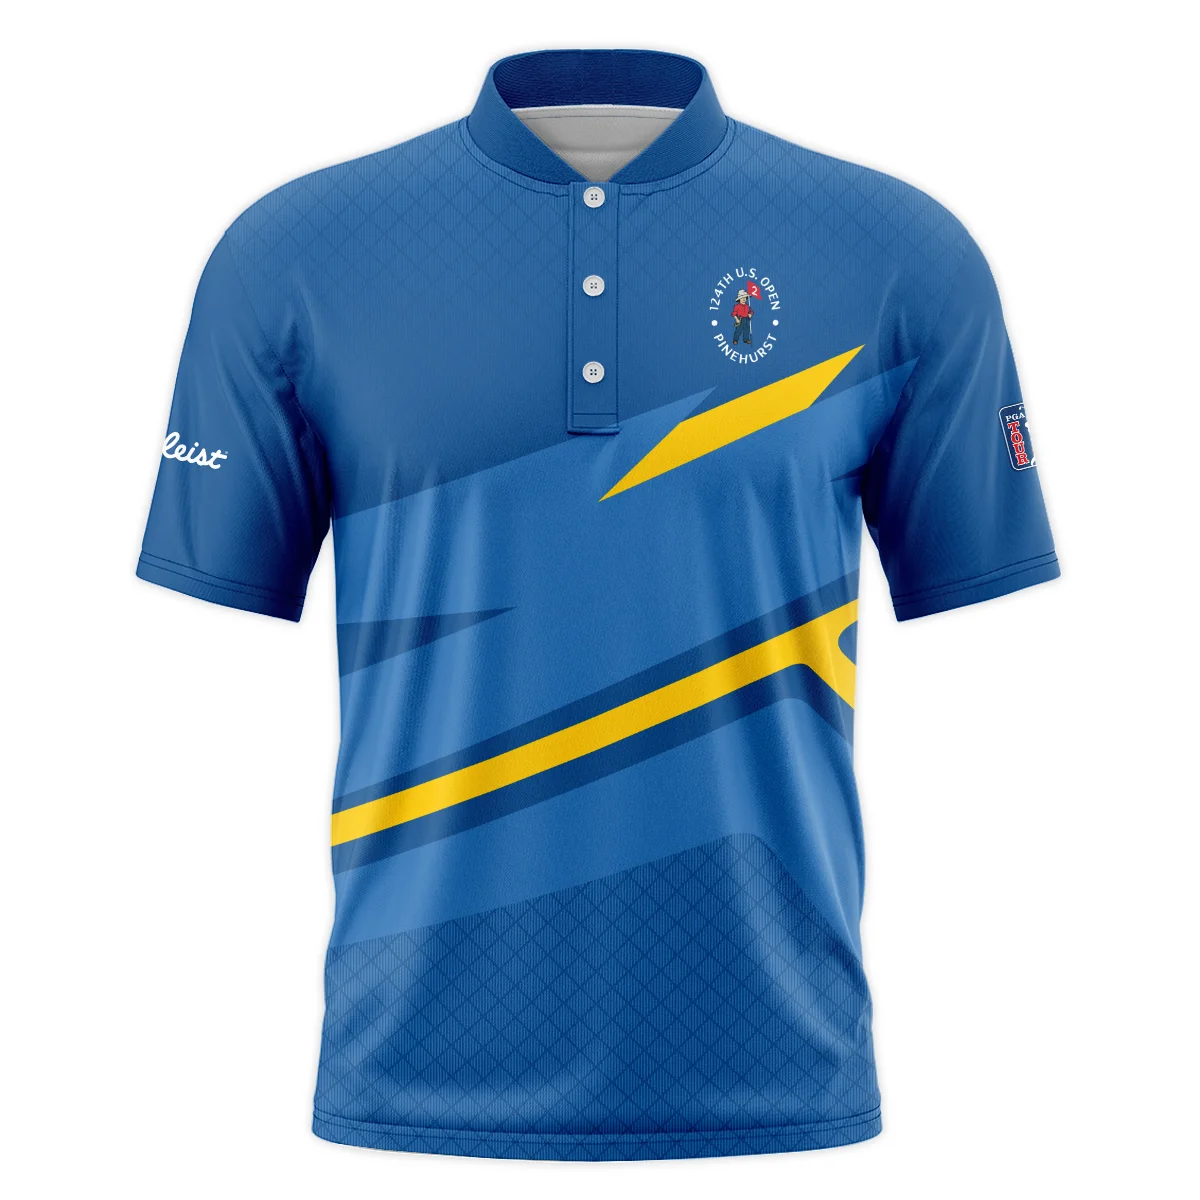 Titleist 124th U.S. Open Pinehurst Blue Yellow Mix Pattern Polo Shirt Style Classic